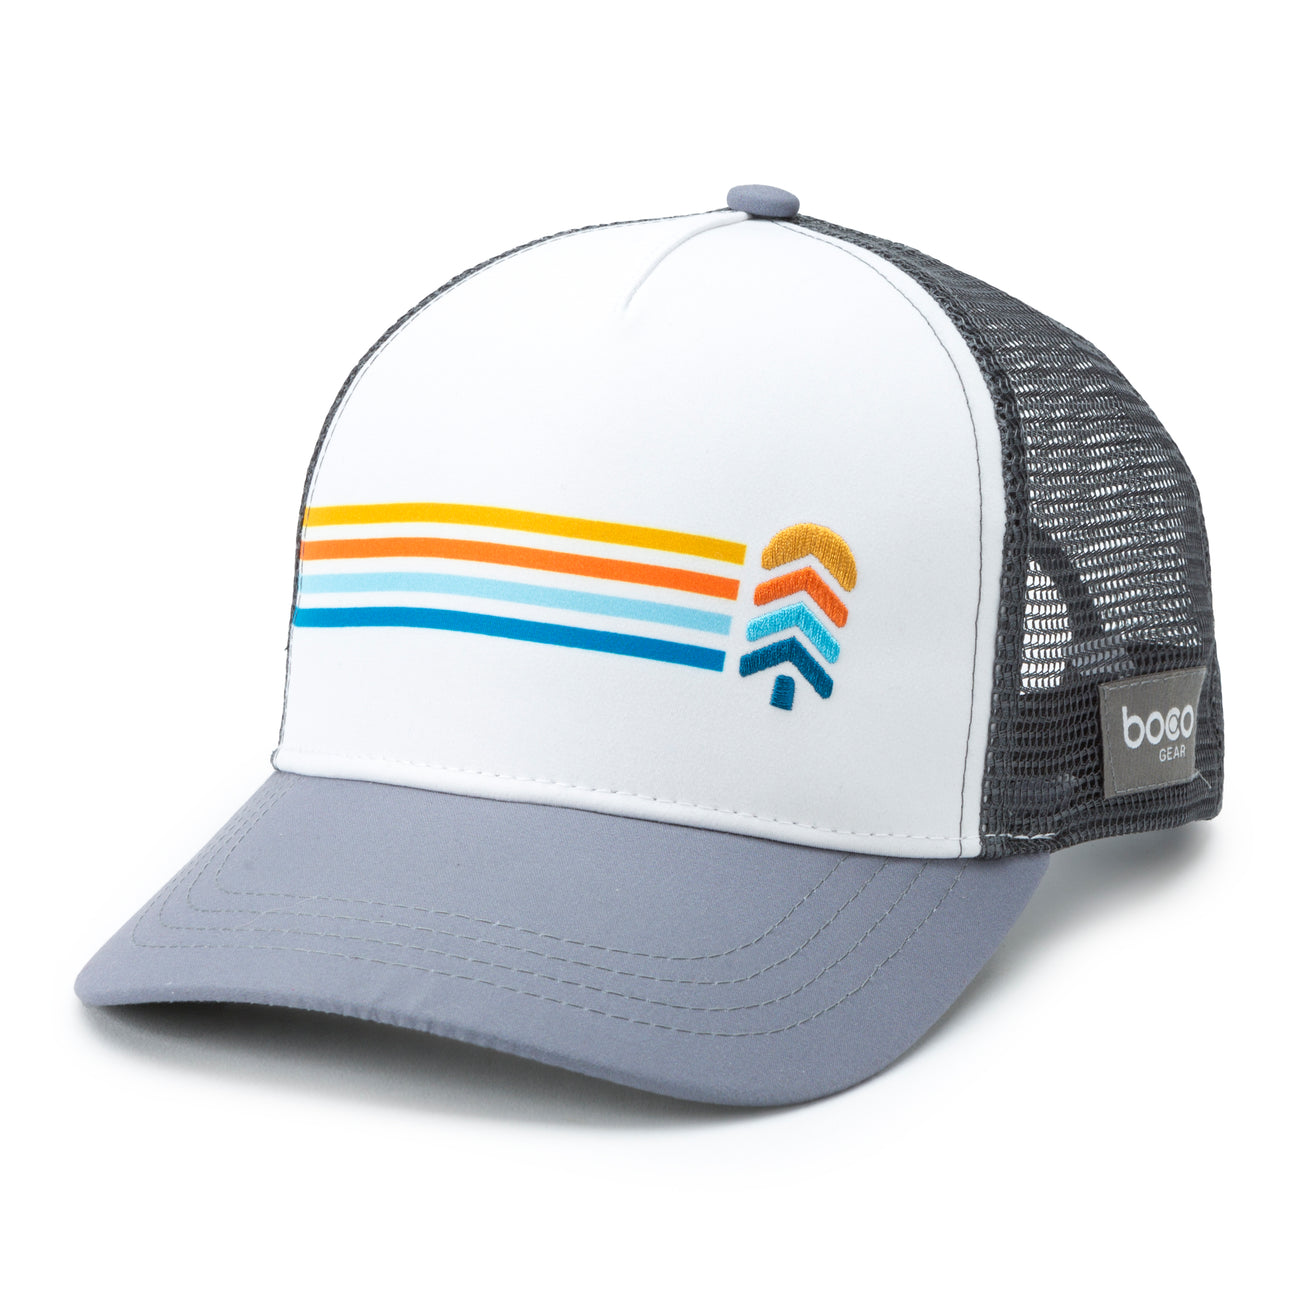 Trucker Hat - Logo Stripe